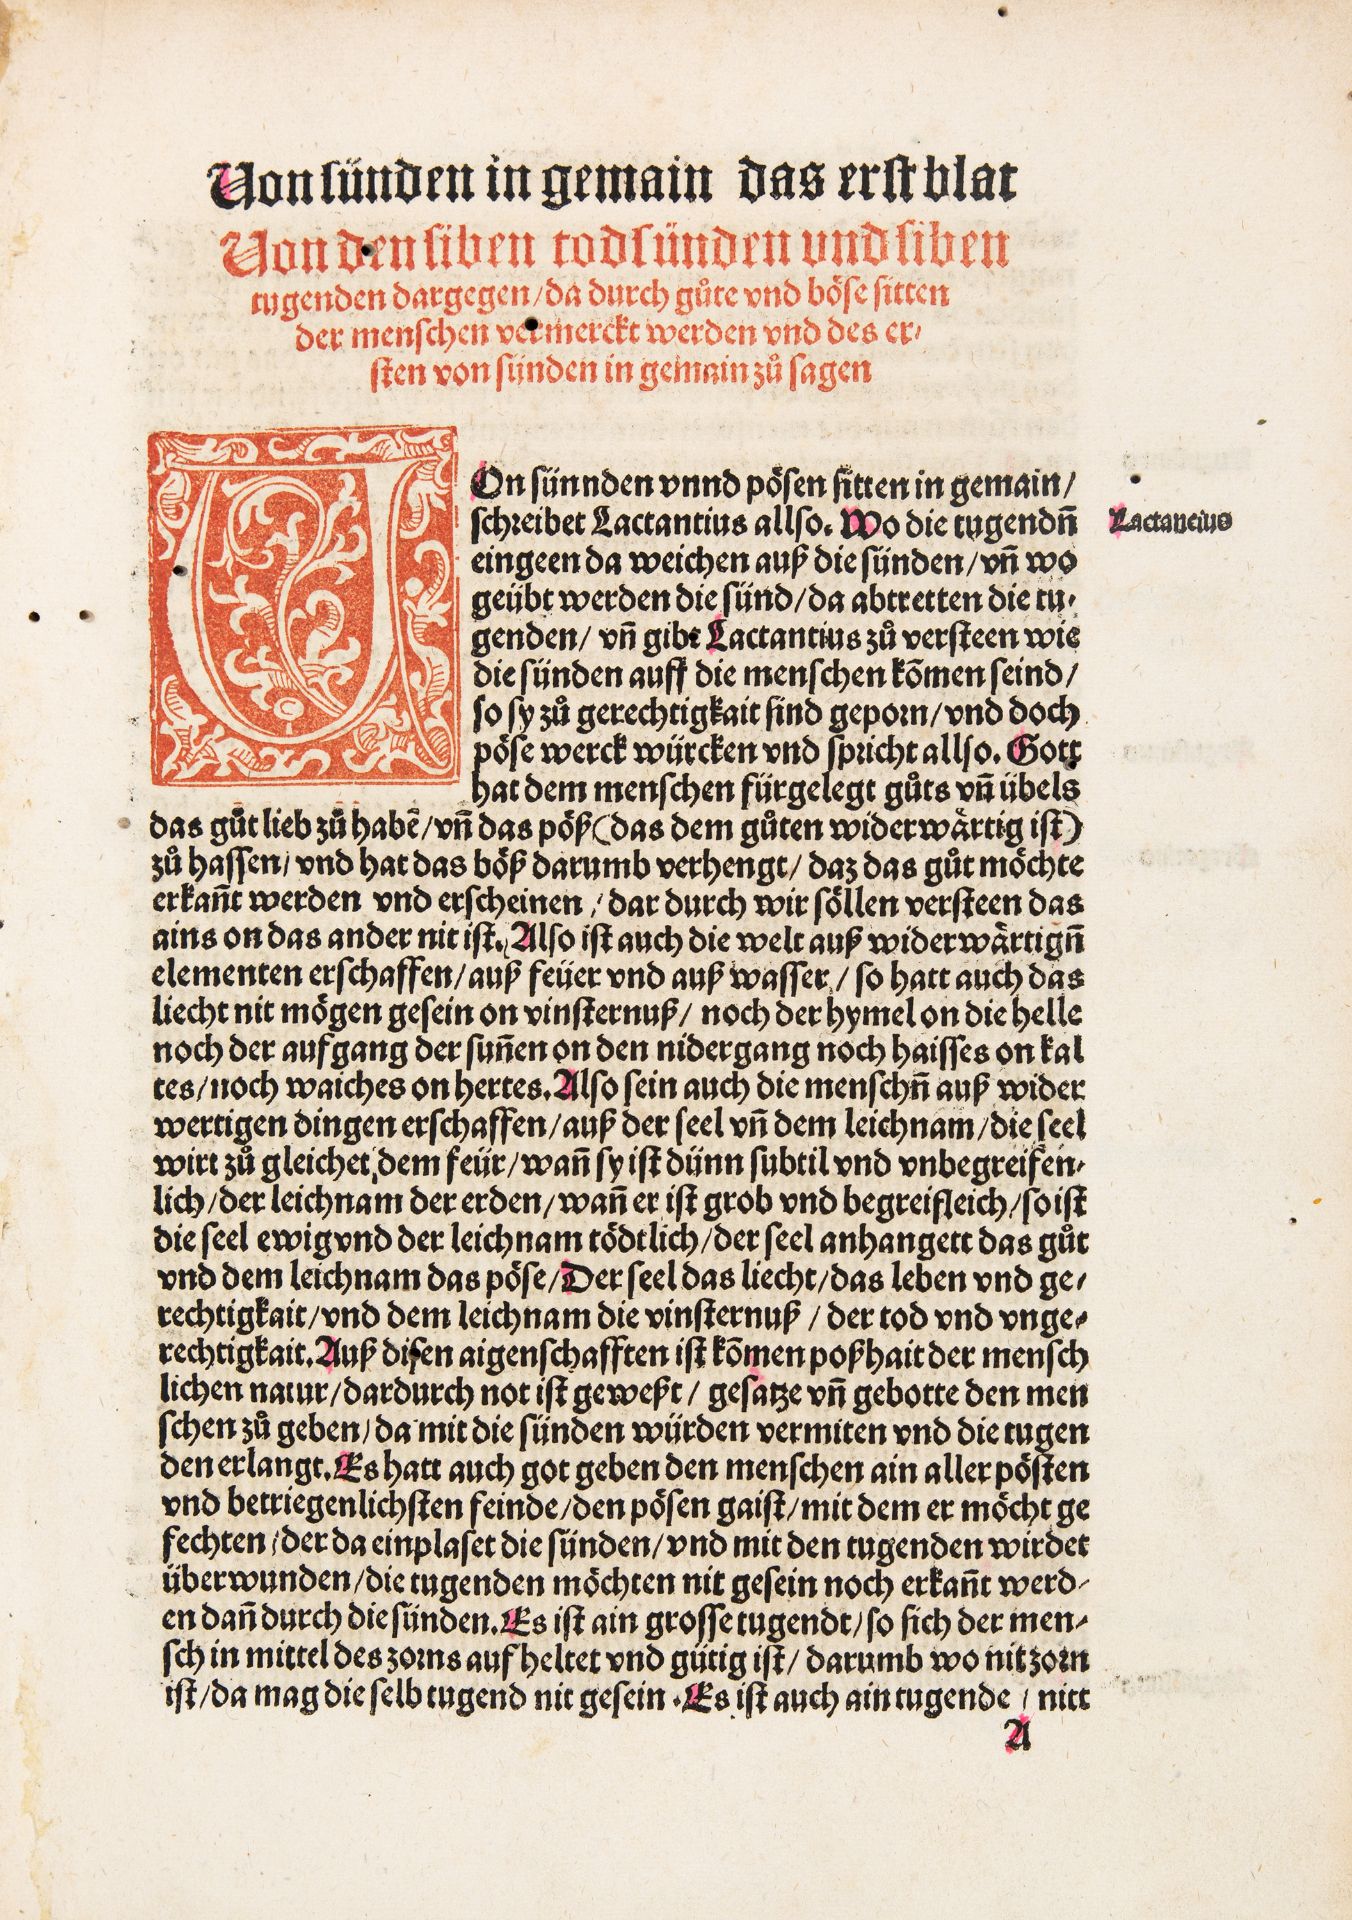 Albrecht von Eyb, Spiegel der Sitten. Augsburg 1511.